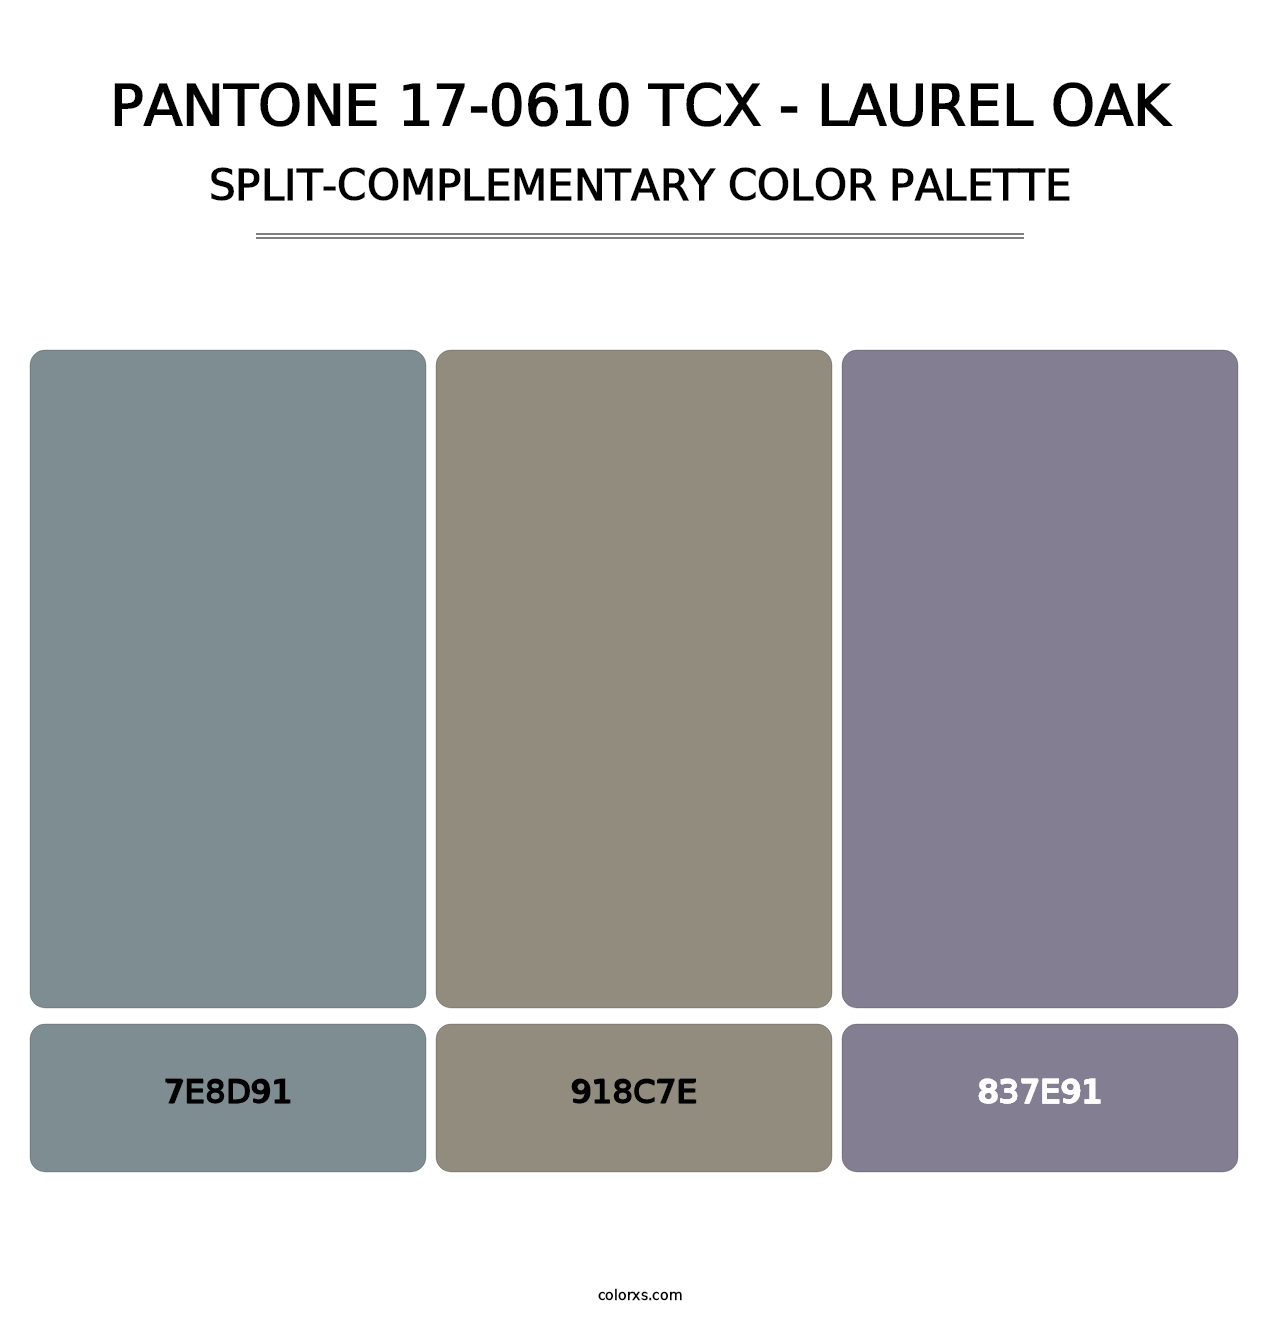 PANTONE 17-0610 TCX - Laurel Oak - Split-Complementary Color Palette